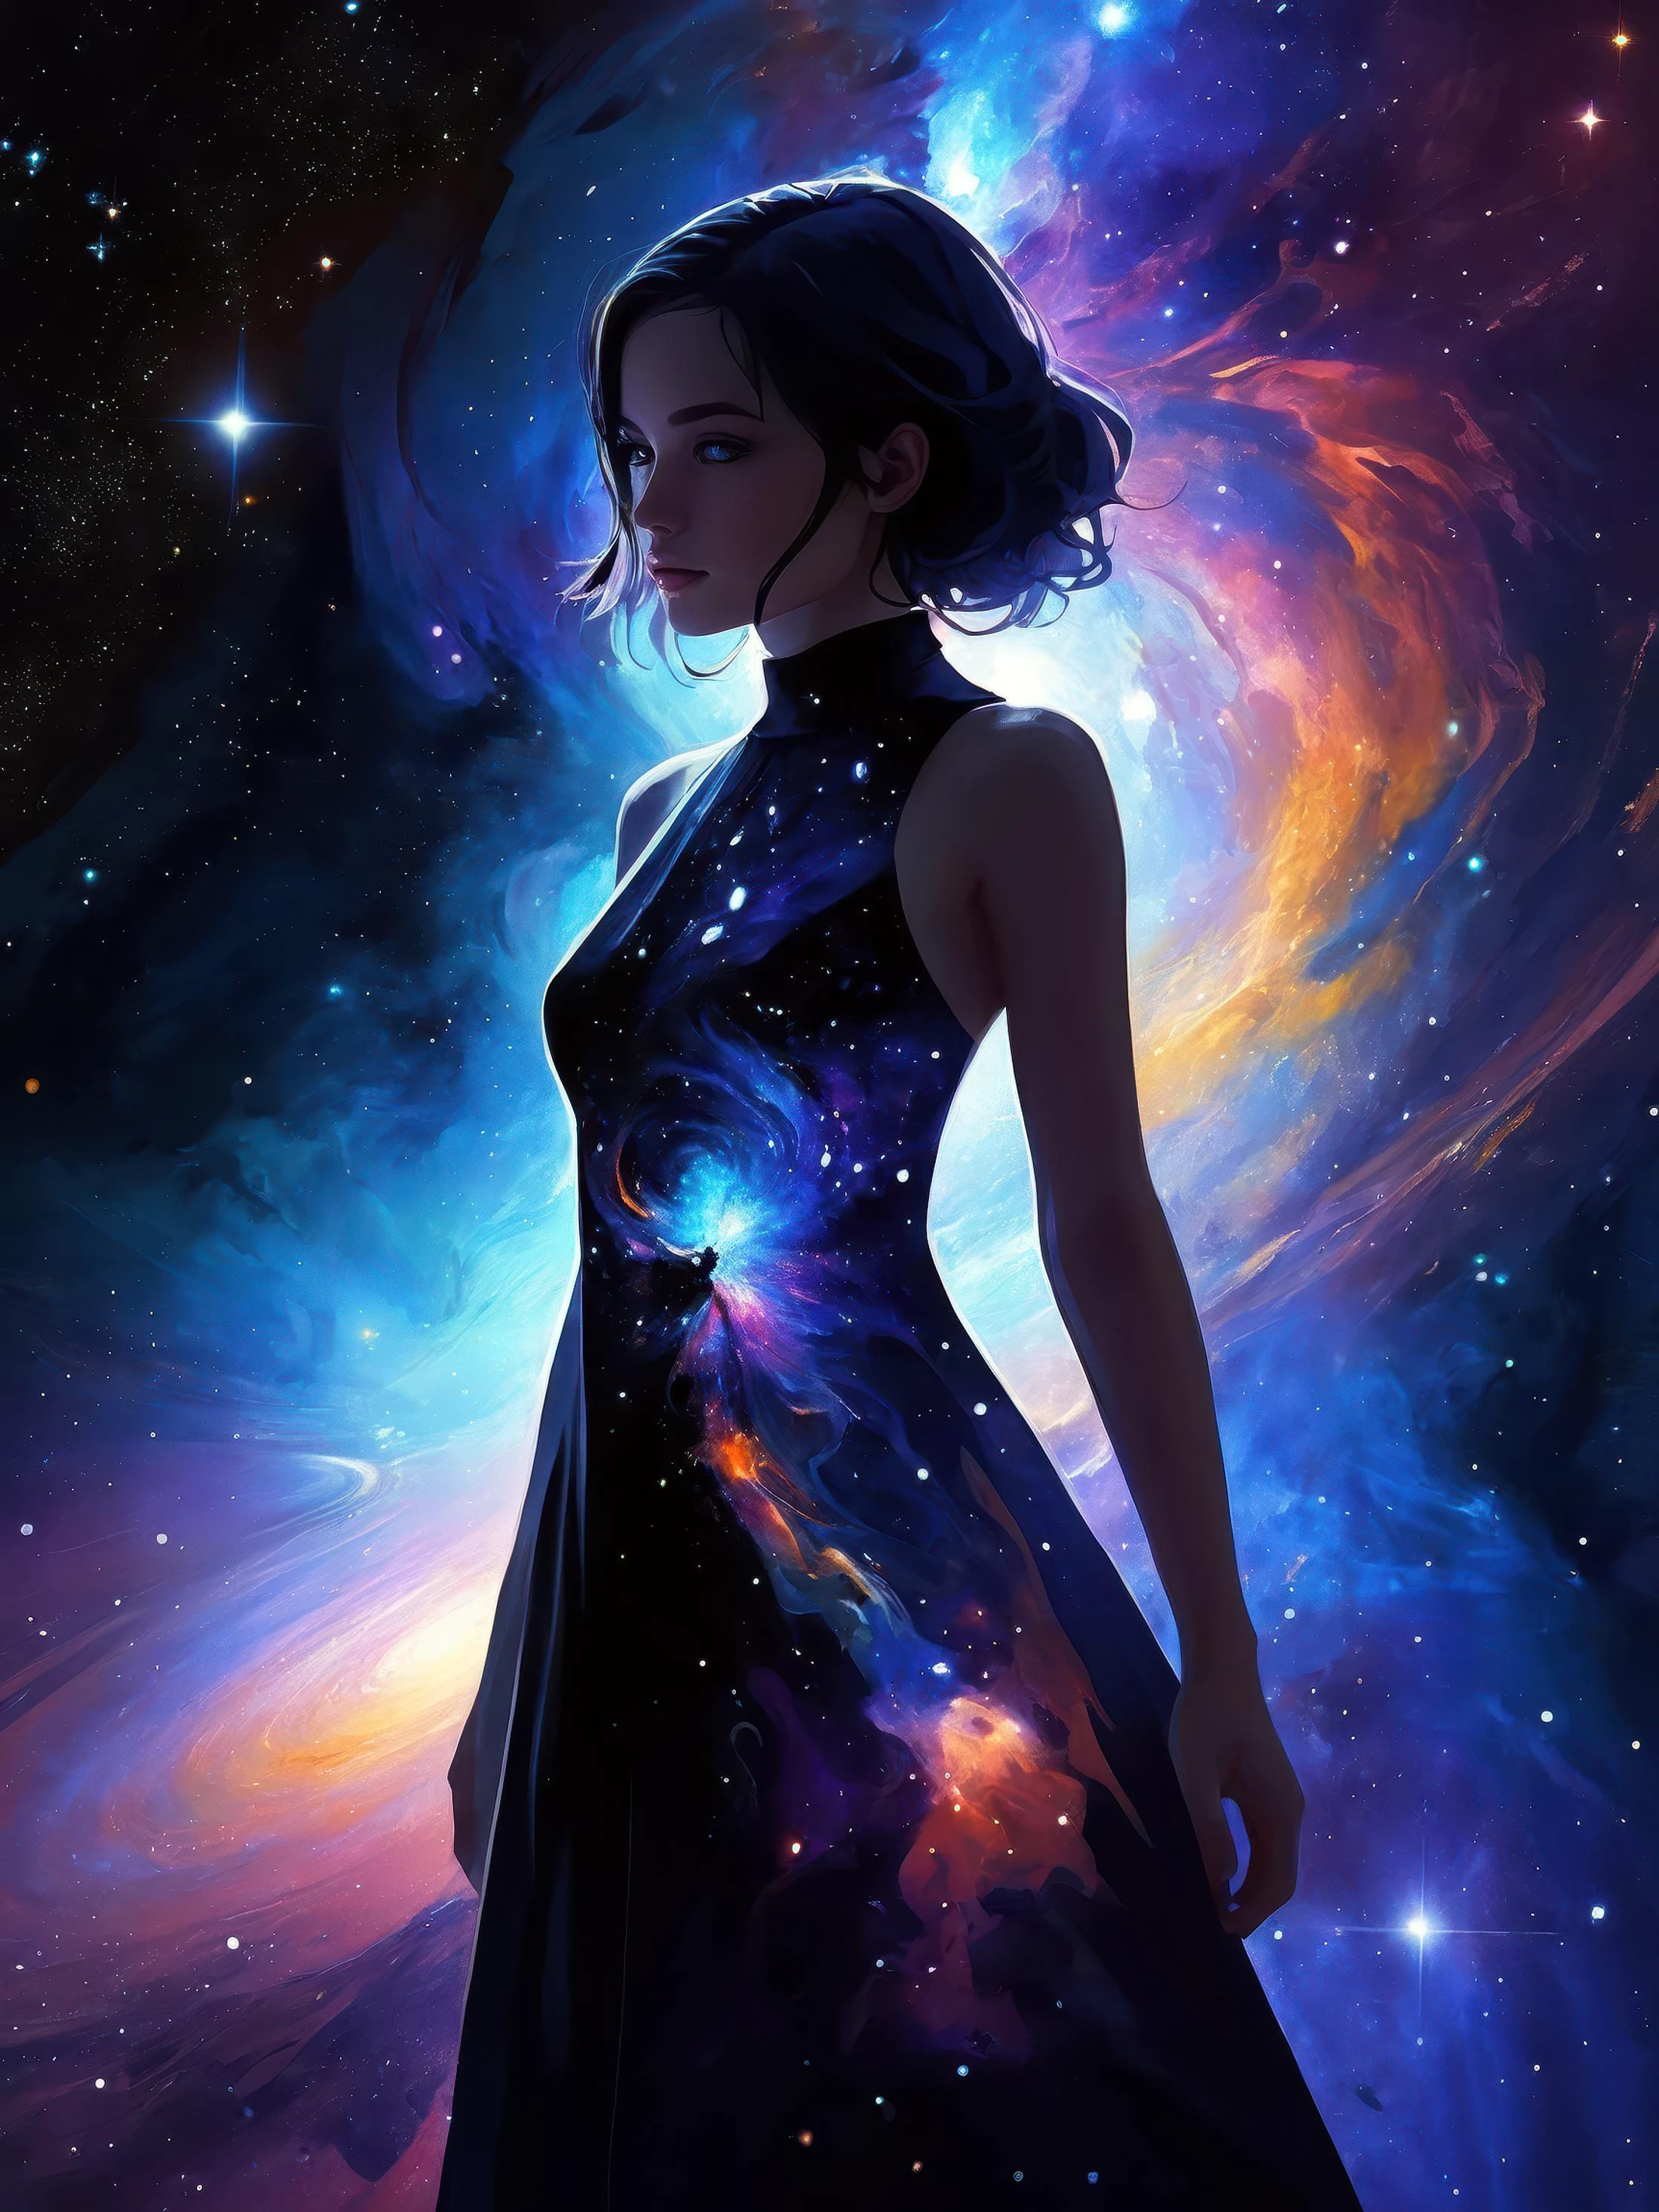 1 chica, solo, mirando al espectador, (arte abstractoe:1.3), (Tema oscuro:1.2), arte, estilizado, sombra profunda, Tema oscuro, vestido cósmico, belleza cósmica, en el espacio, nebulosa